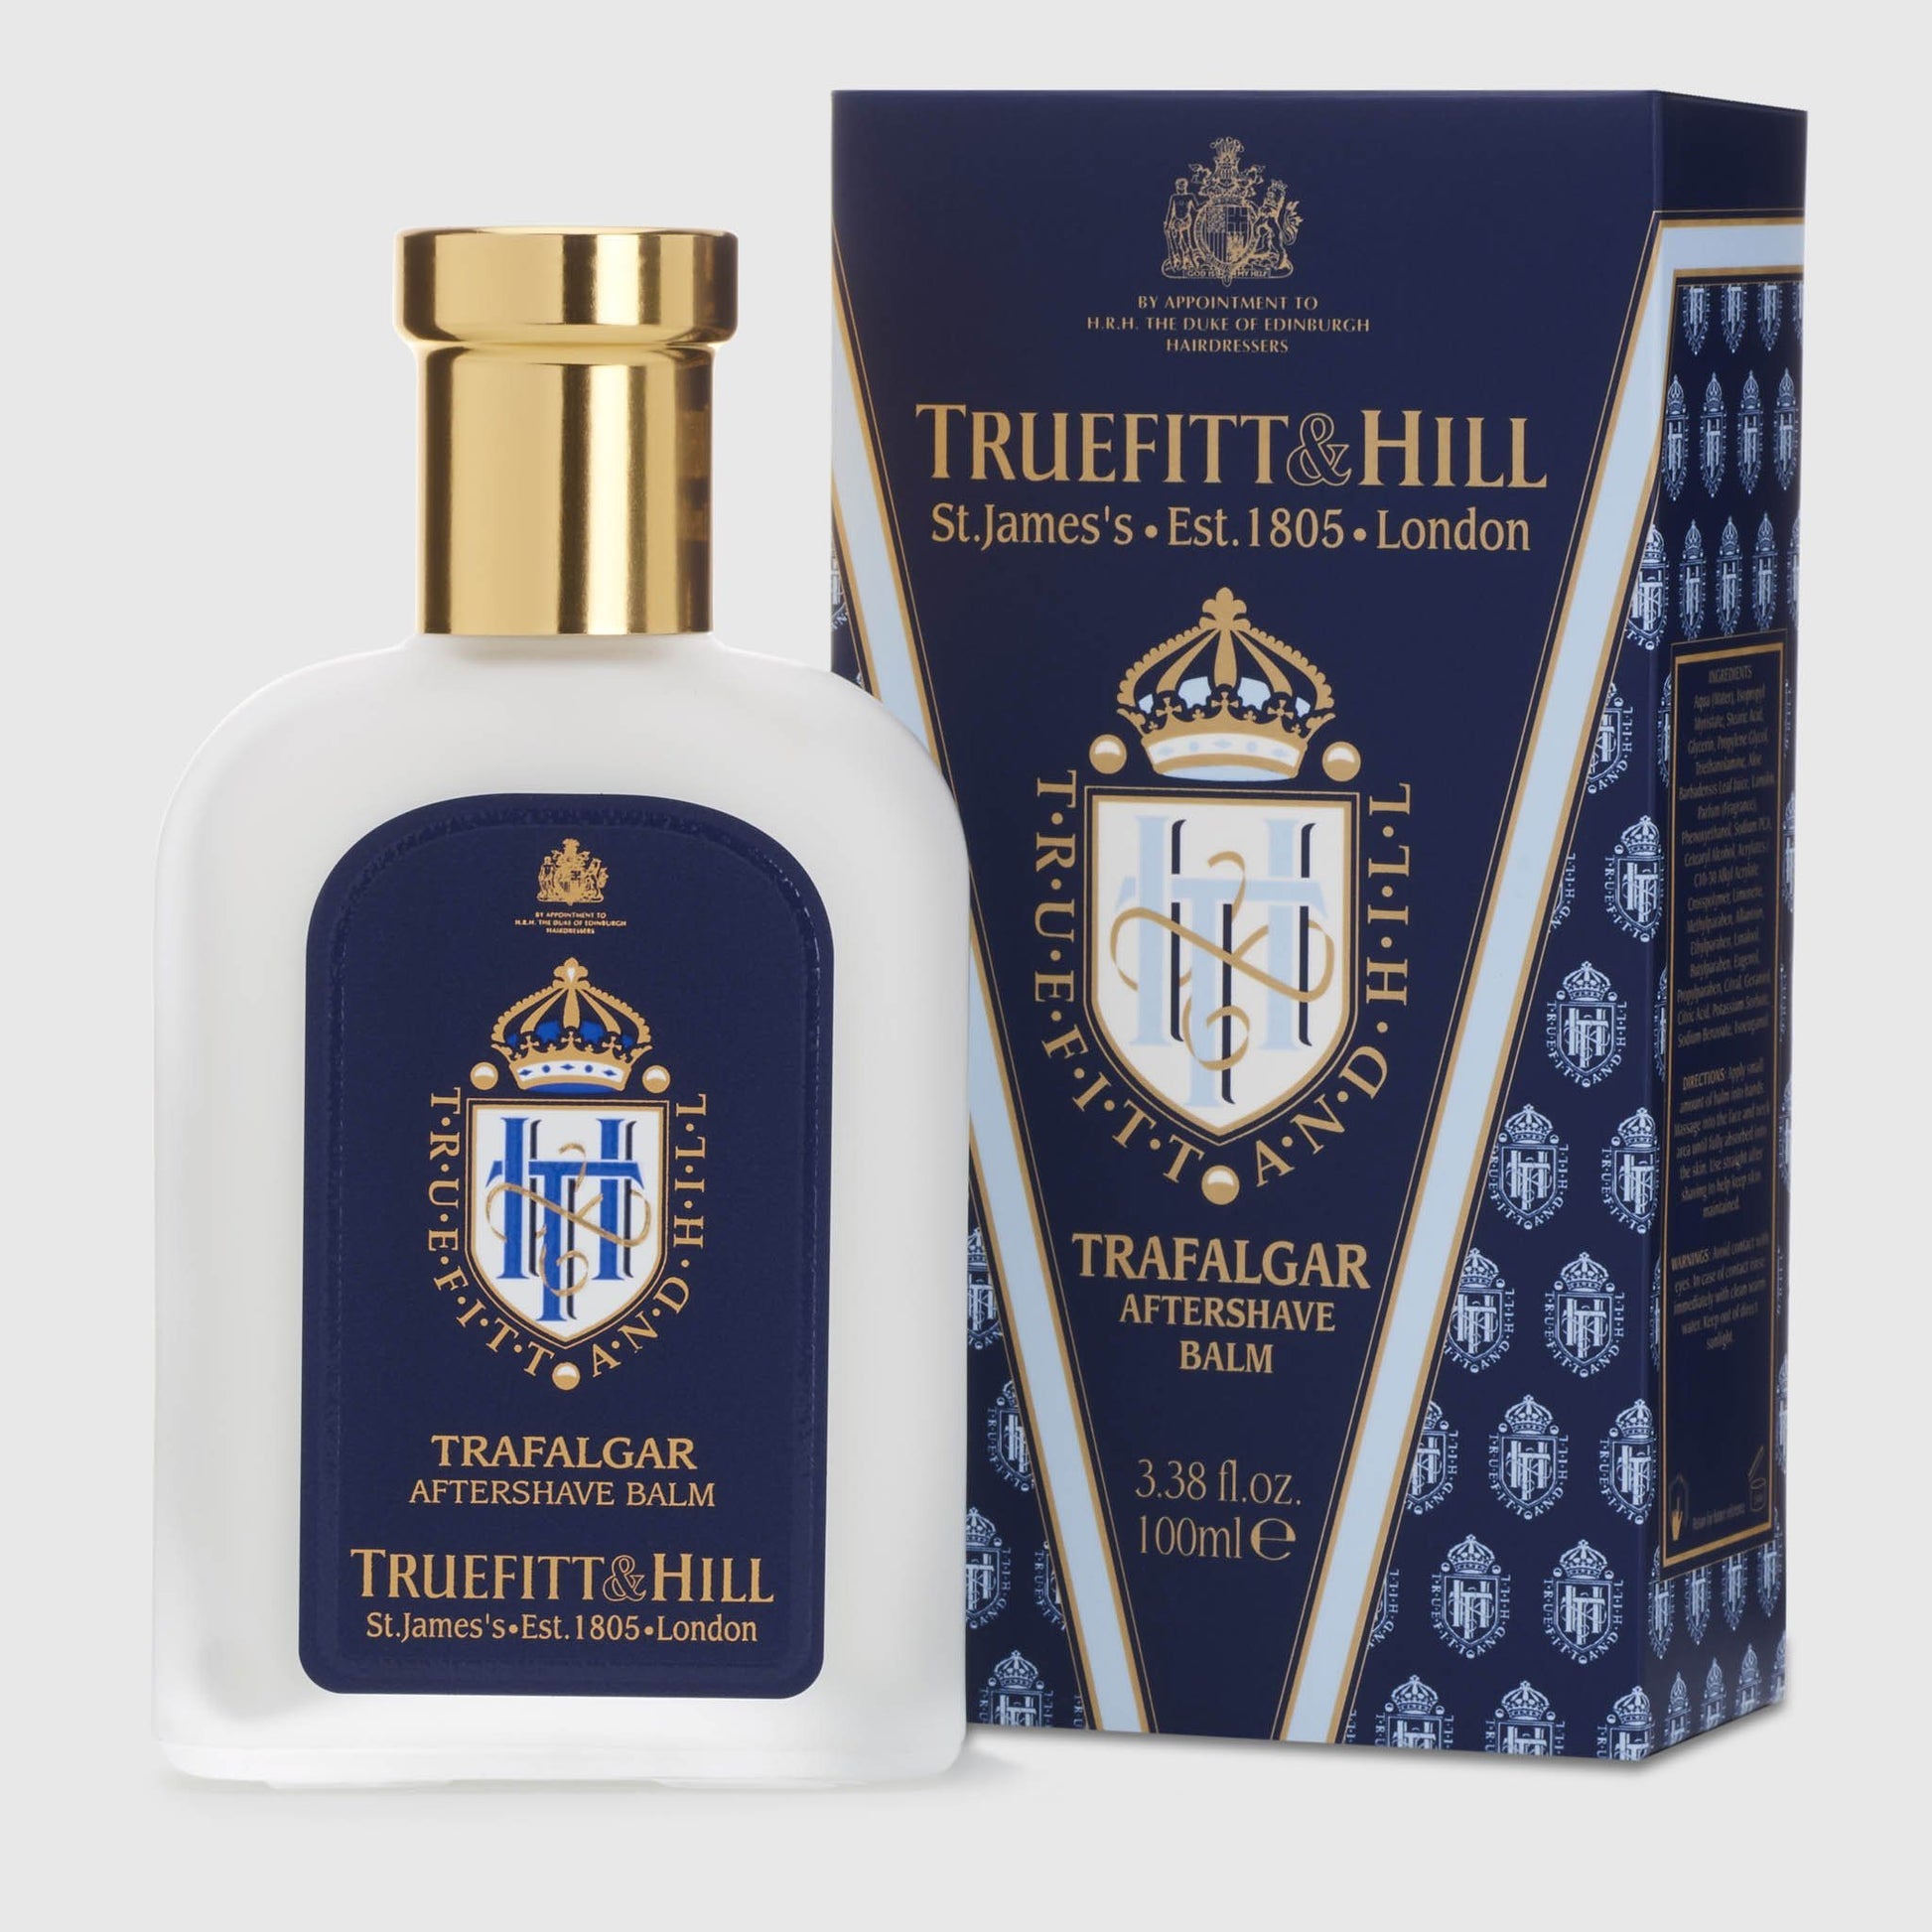 Truefitt & Hill Aftershave Balm - Trafalgar Shave Products Truefitt & Hill 